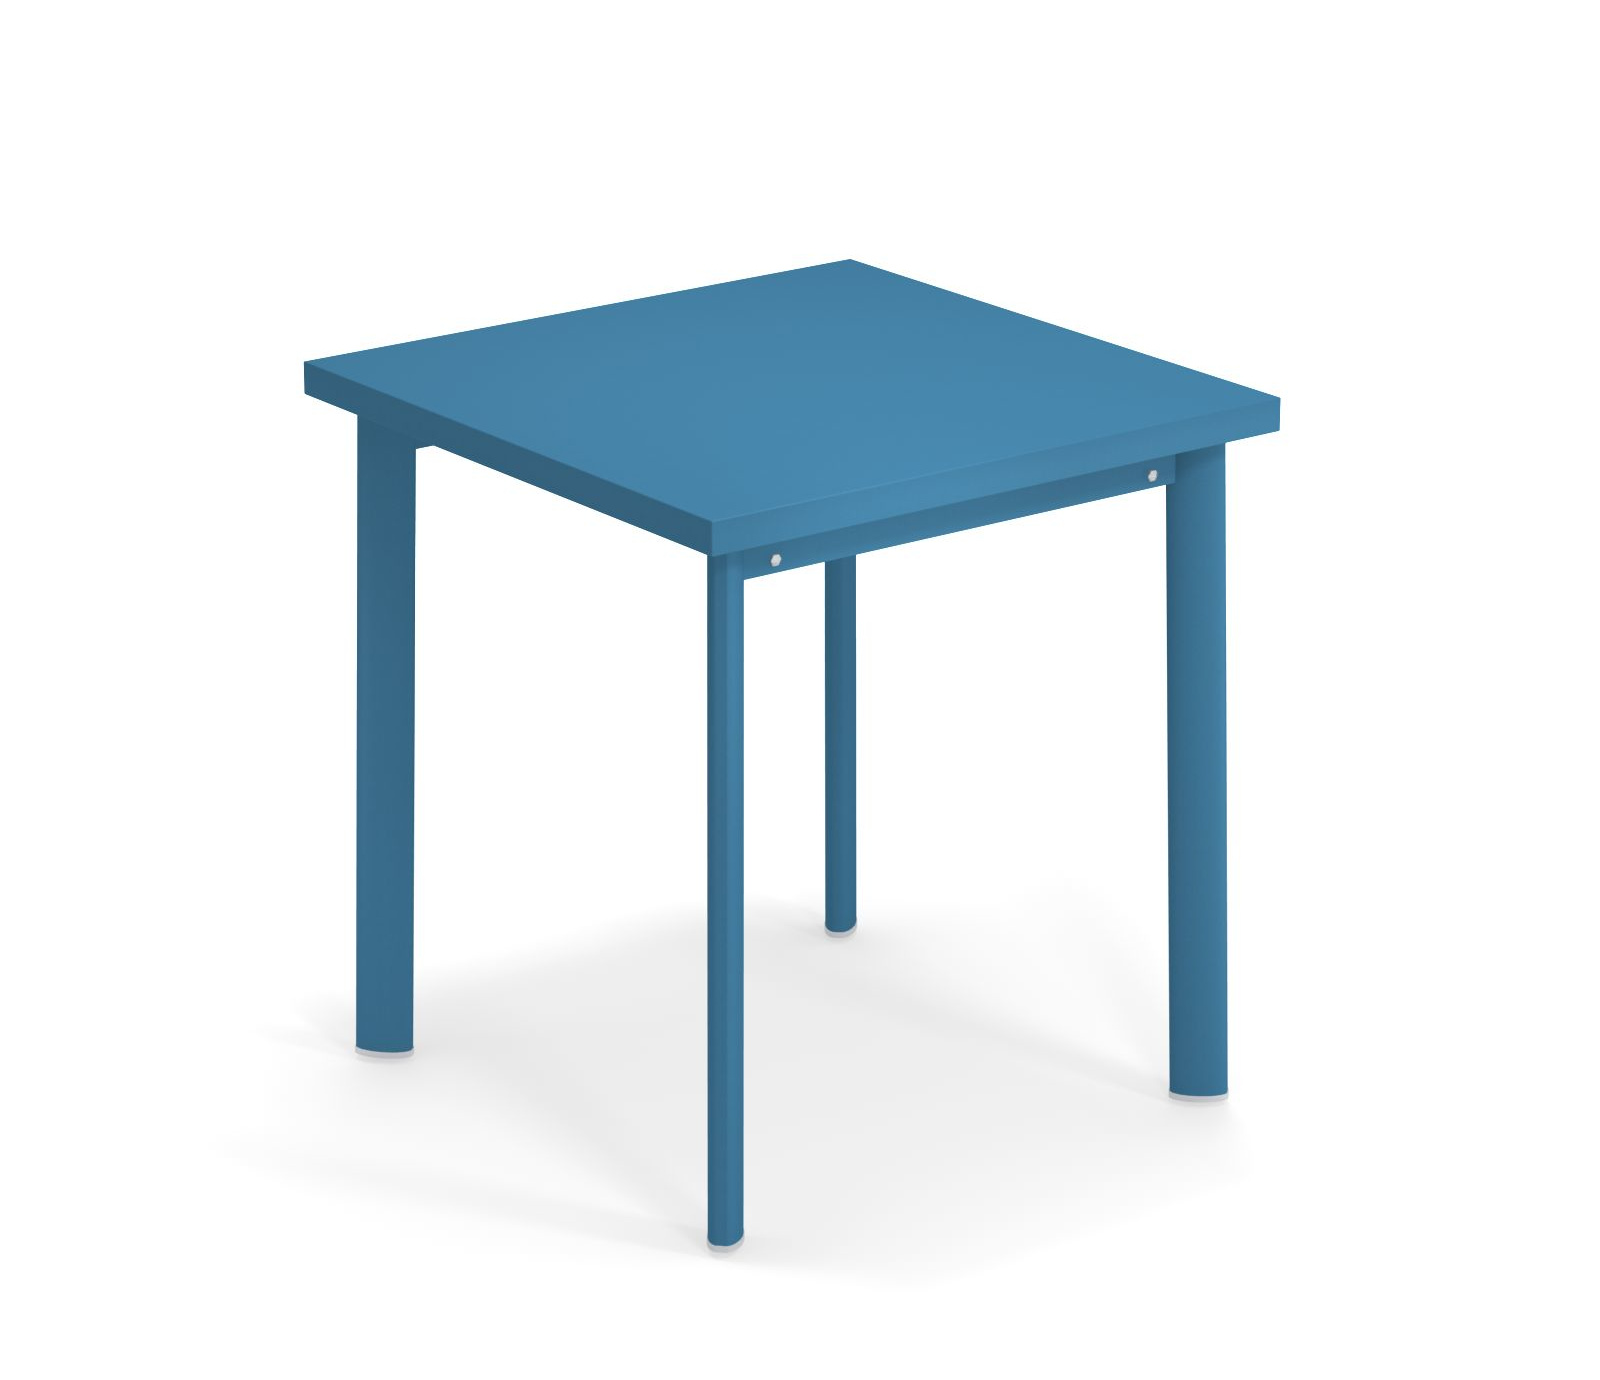 Star Tisch, 70 x 70 cm, marineblau